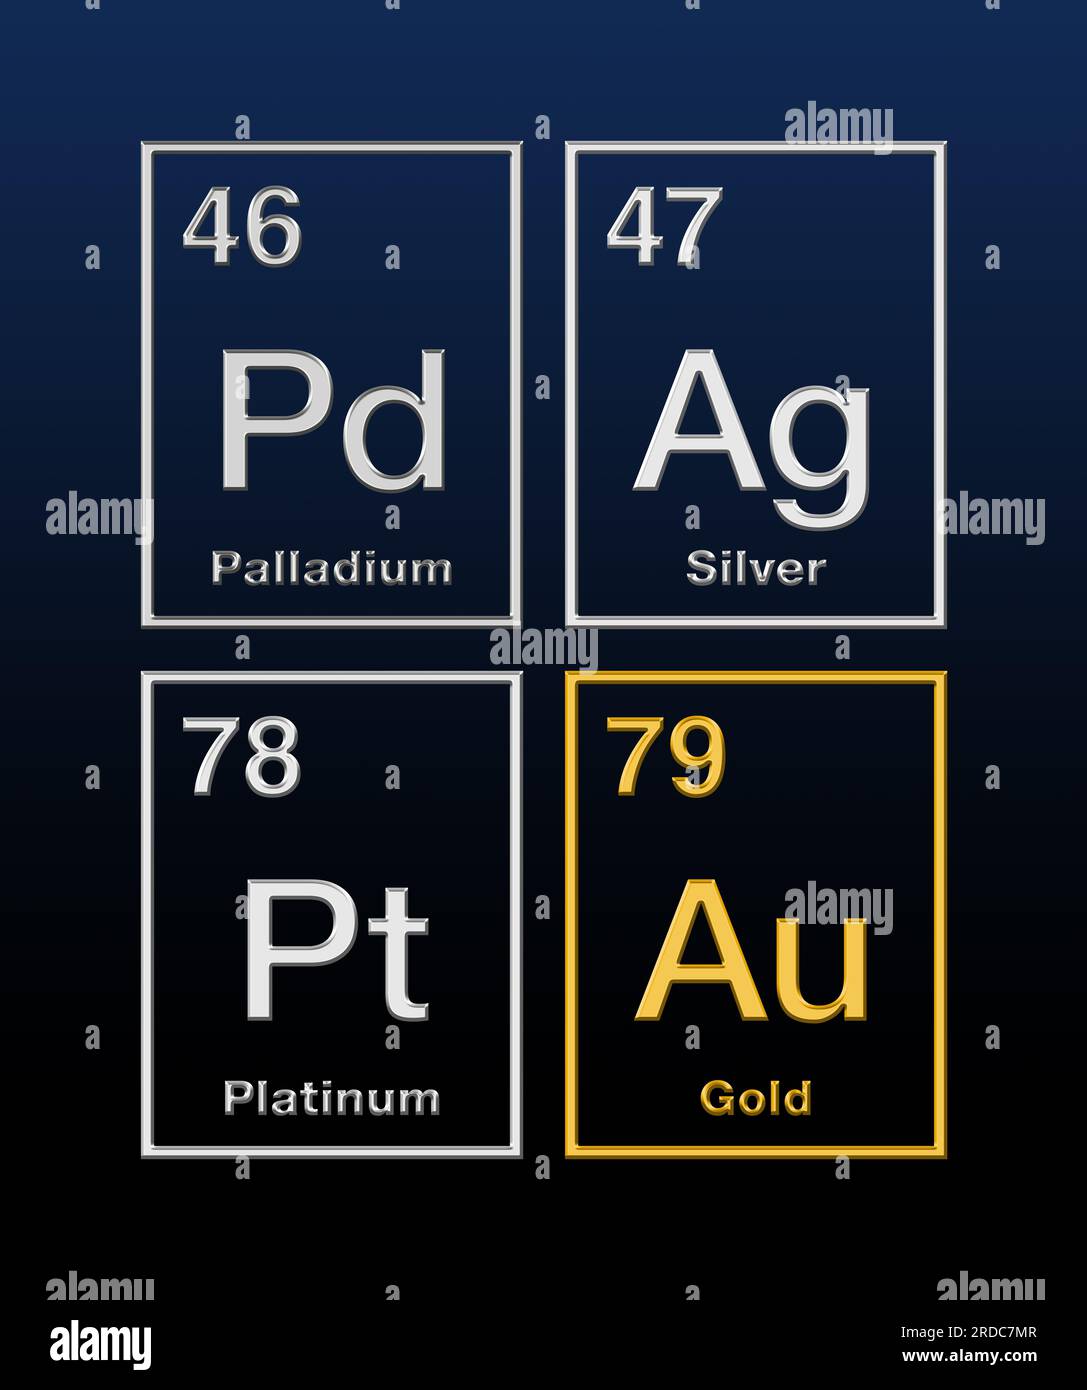 Metalli preziosi oro, argento, platino e palladio, dalla tavola periodica, con numeri atomici e a rilievo. Elementi chimici. Foto Stock